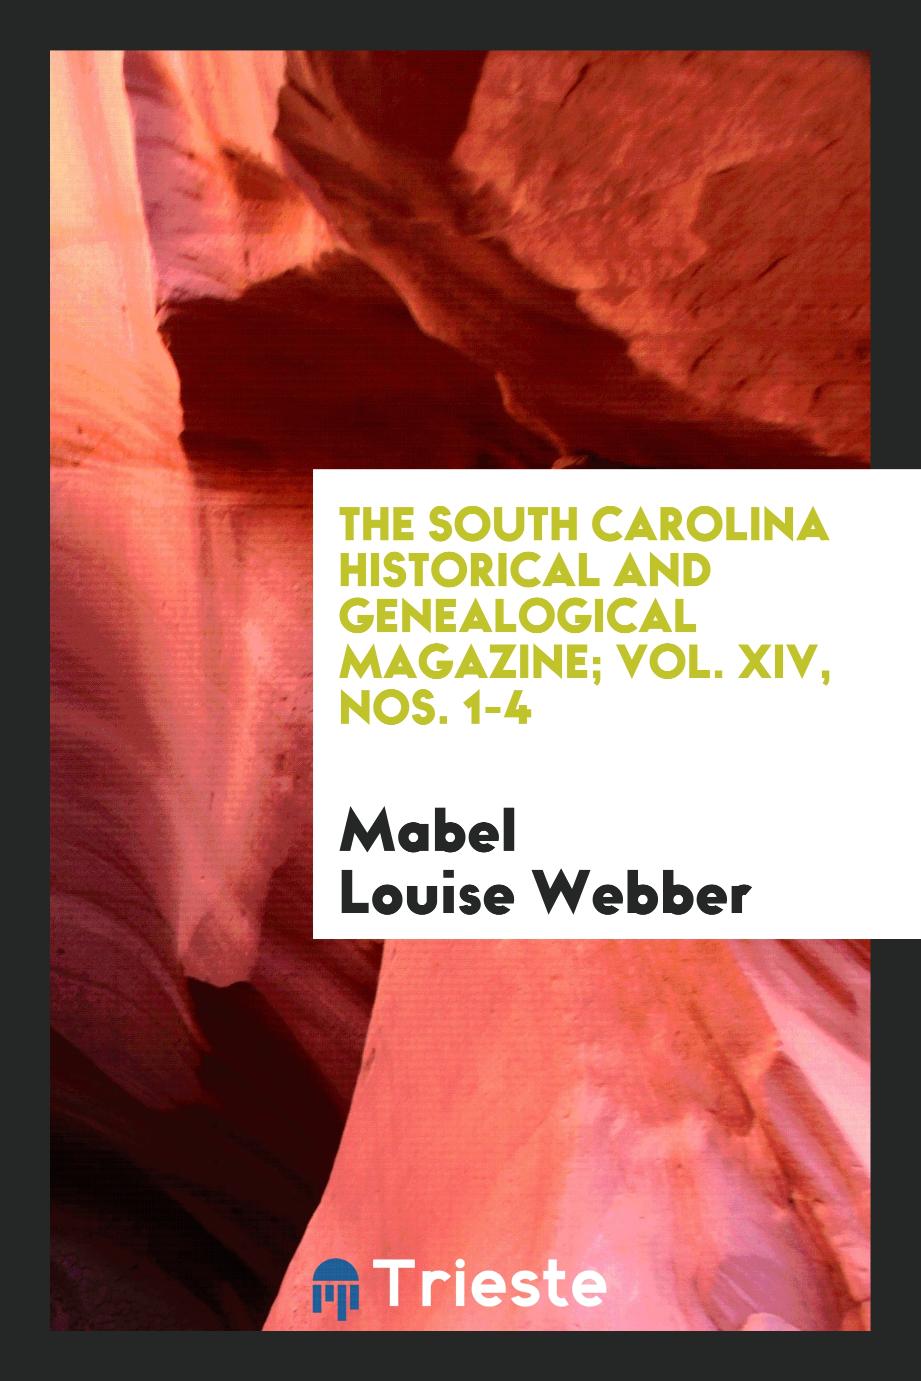 The South Carolina Historical and Genealogical Magazine; Vol. XIV, Nos. 1-4